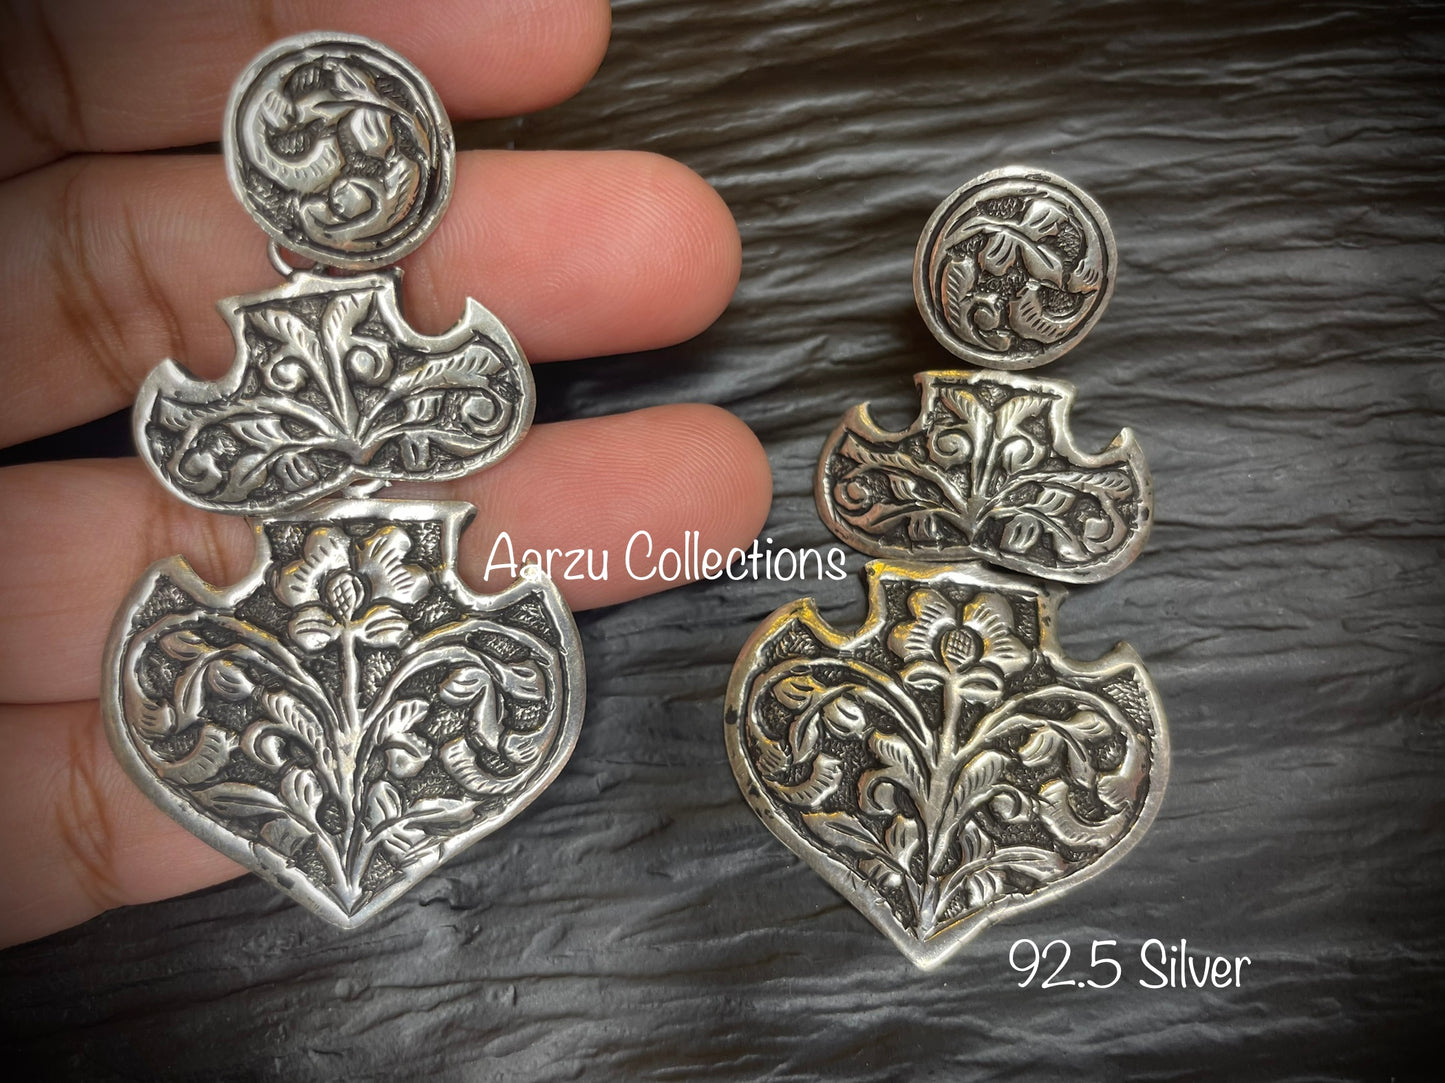 92.5 Silver Earrings - 24 gms